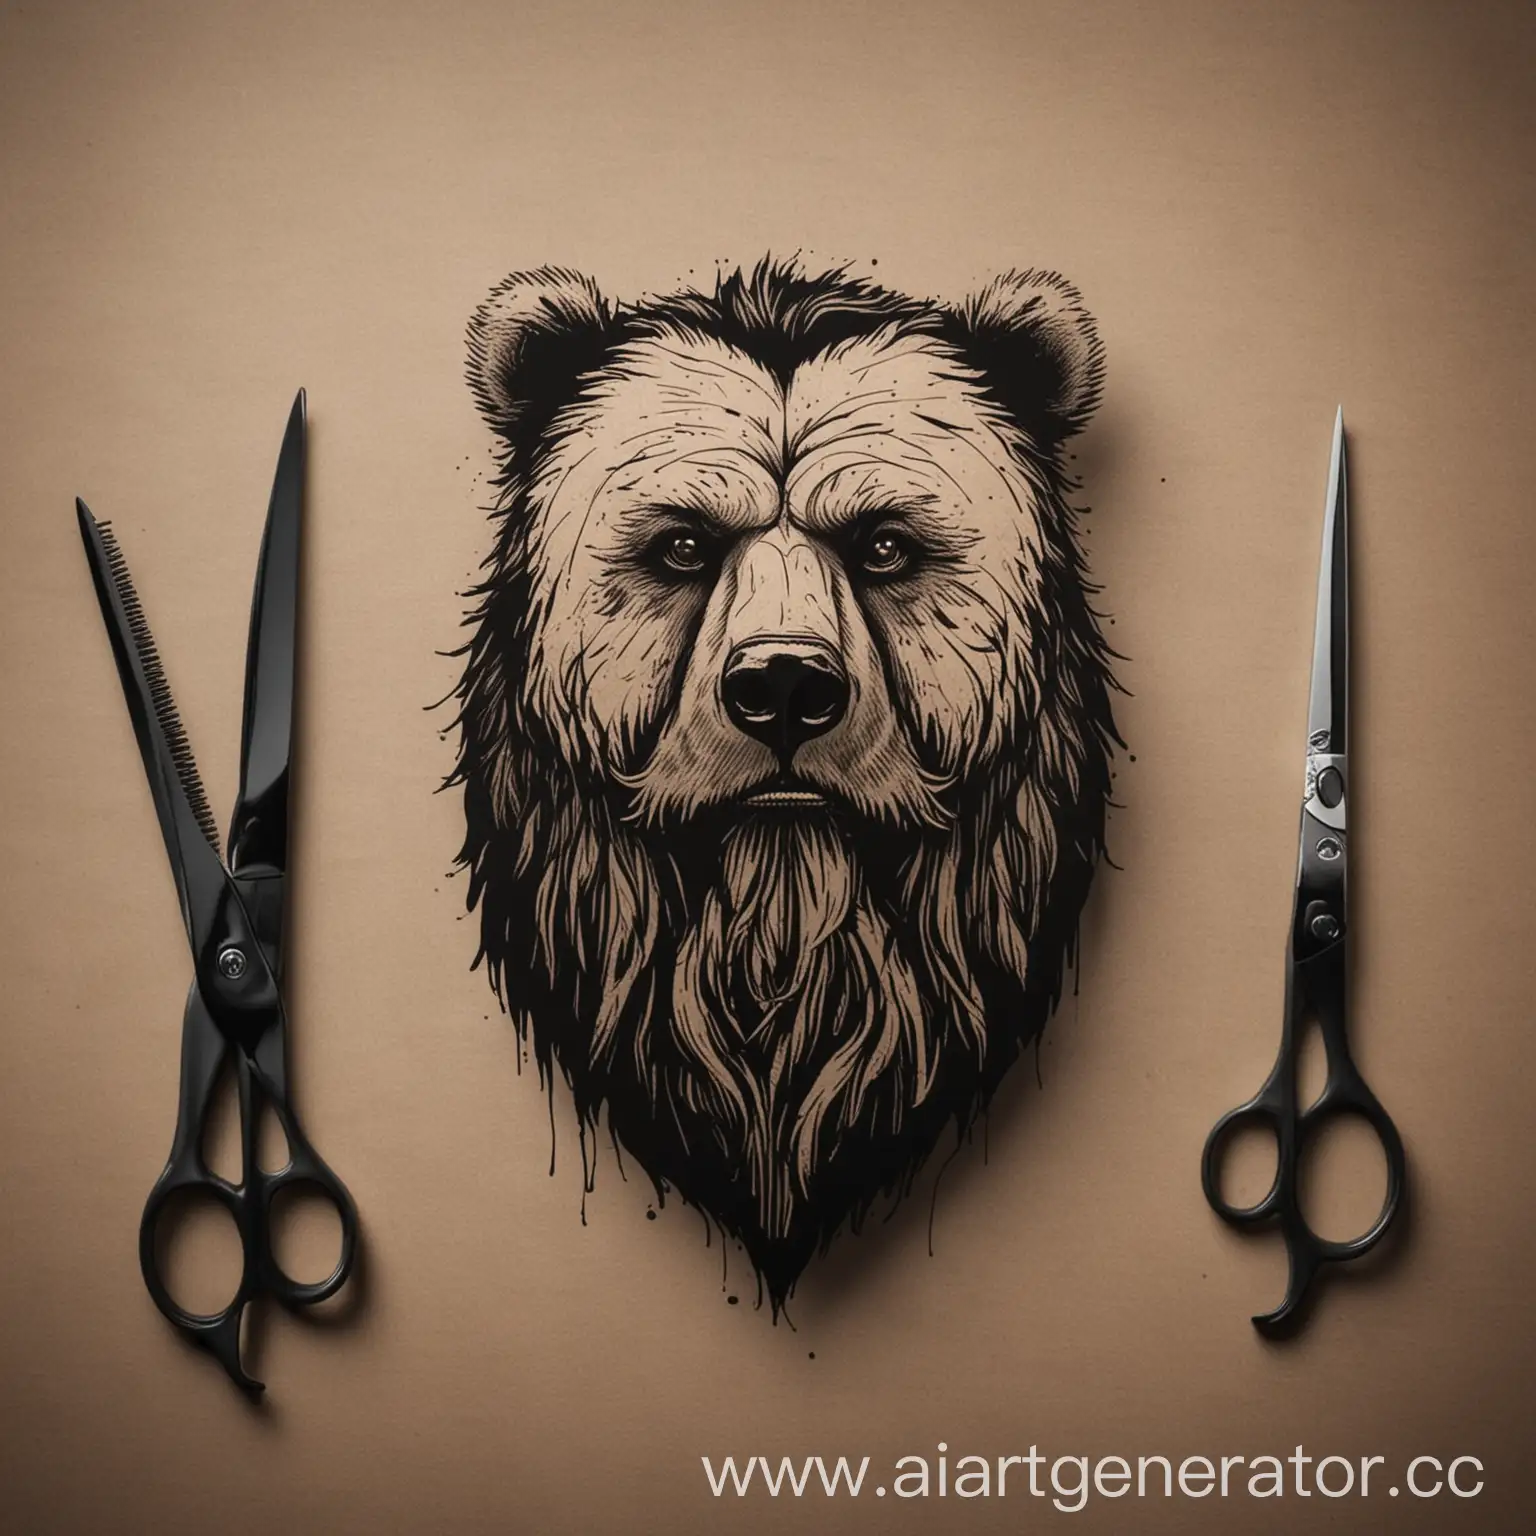 минимализм для парикмахерской "бородатый медведь"
добавь ножницы
